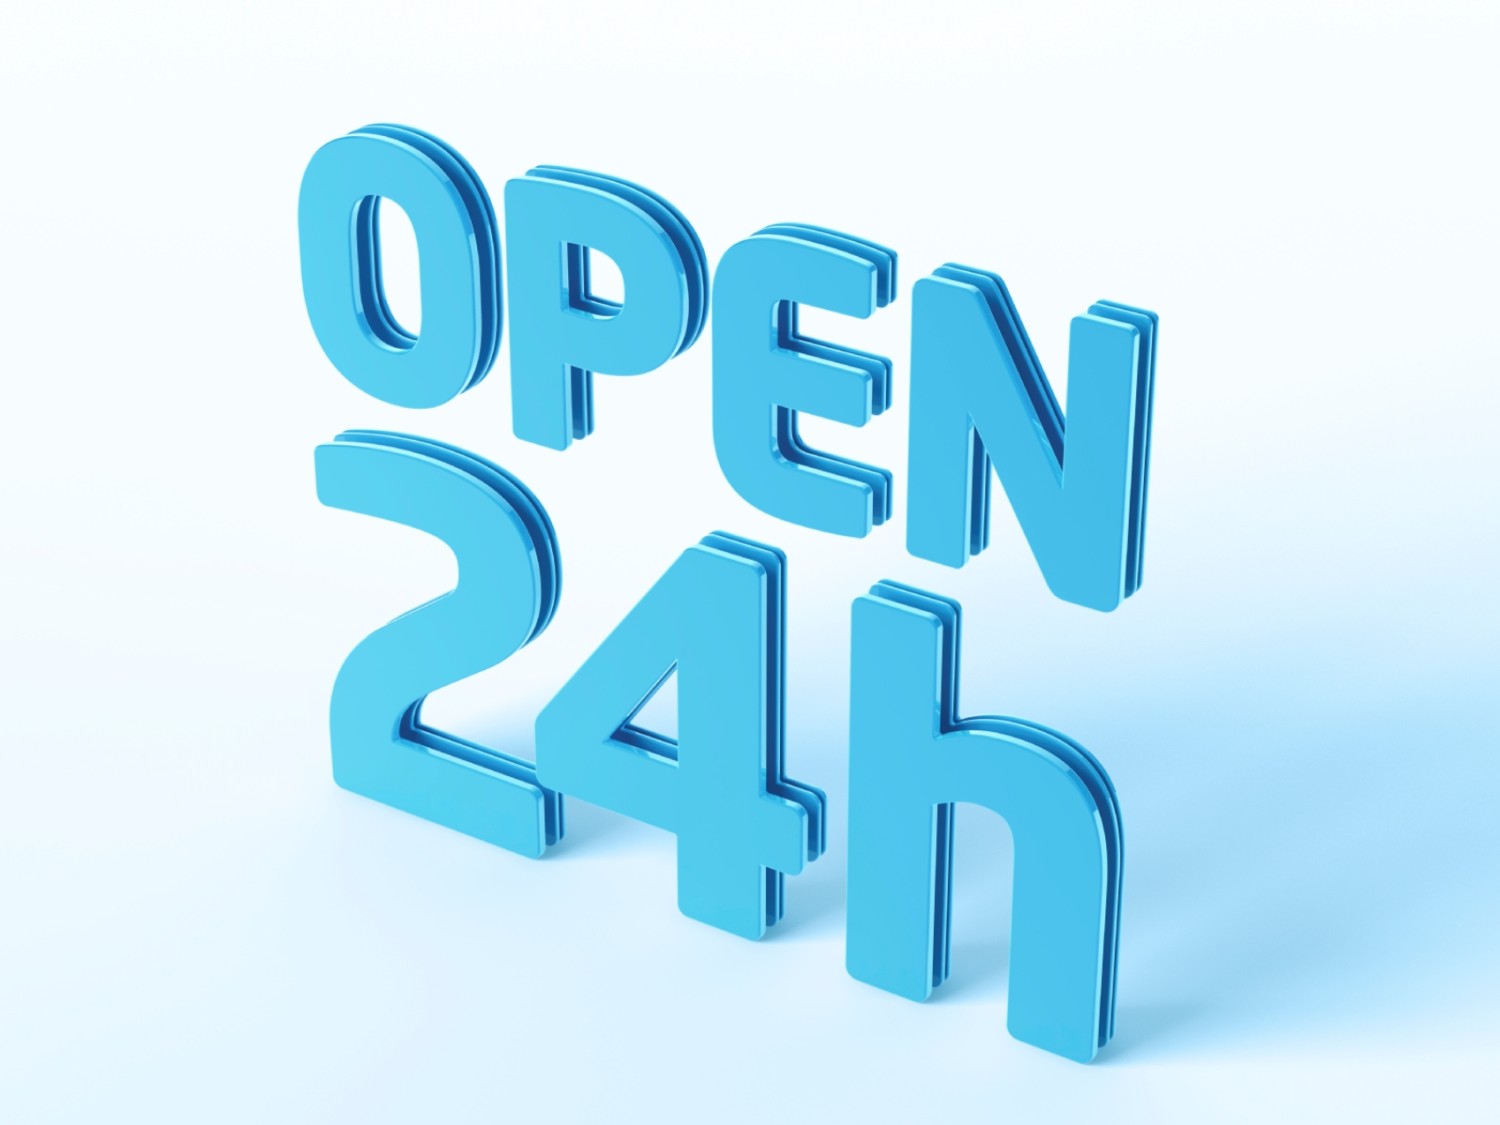 24 опен без регистрации. Опен 24/7. 24 Часа open. Опен 24.2. Open 24 hours.